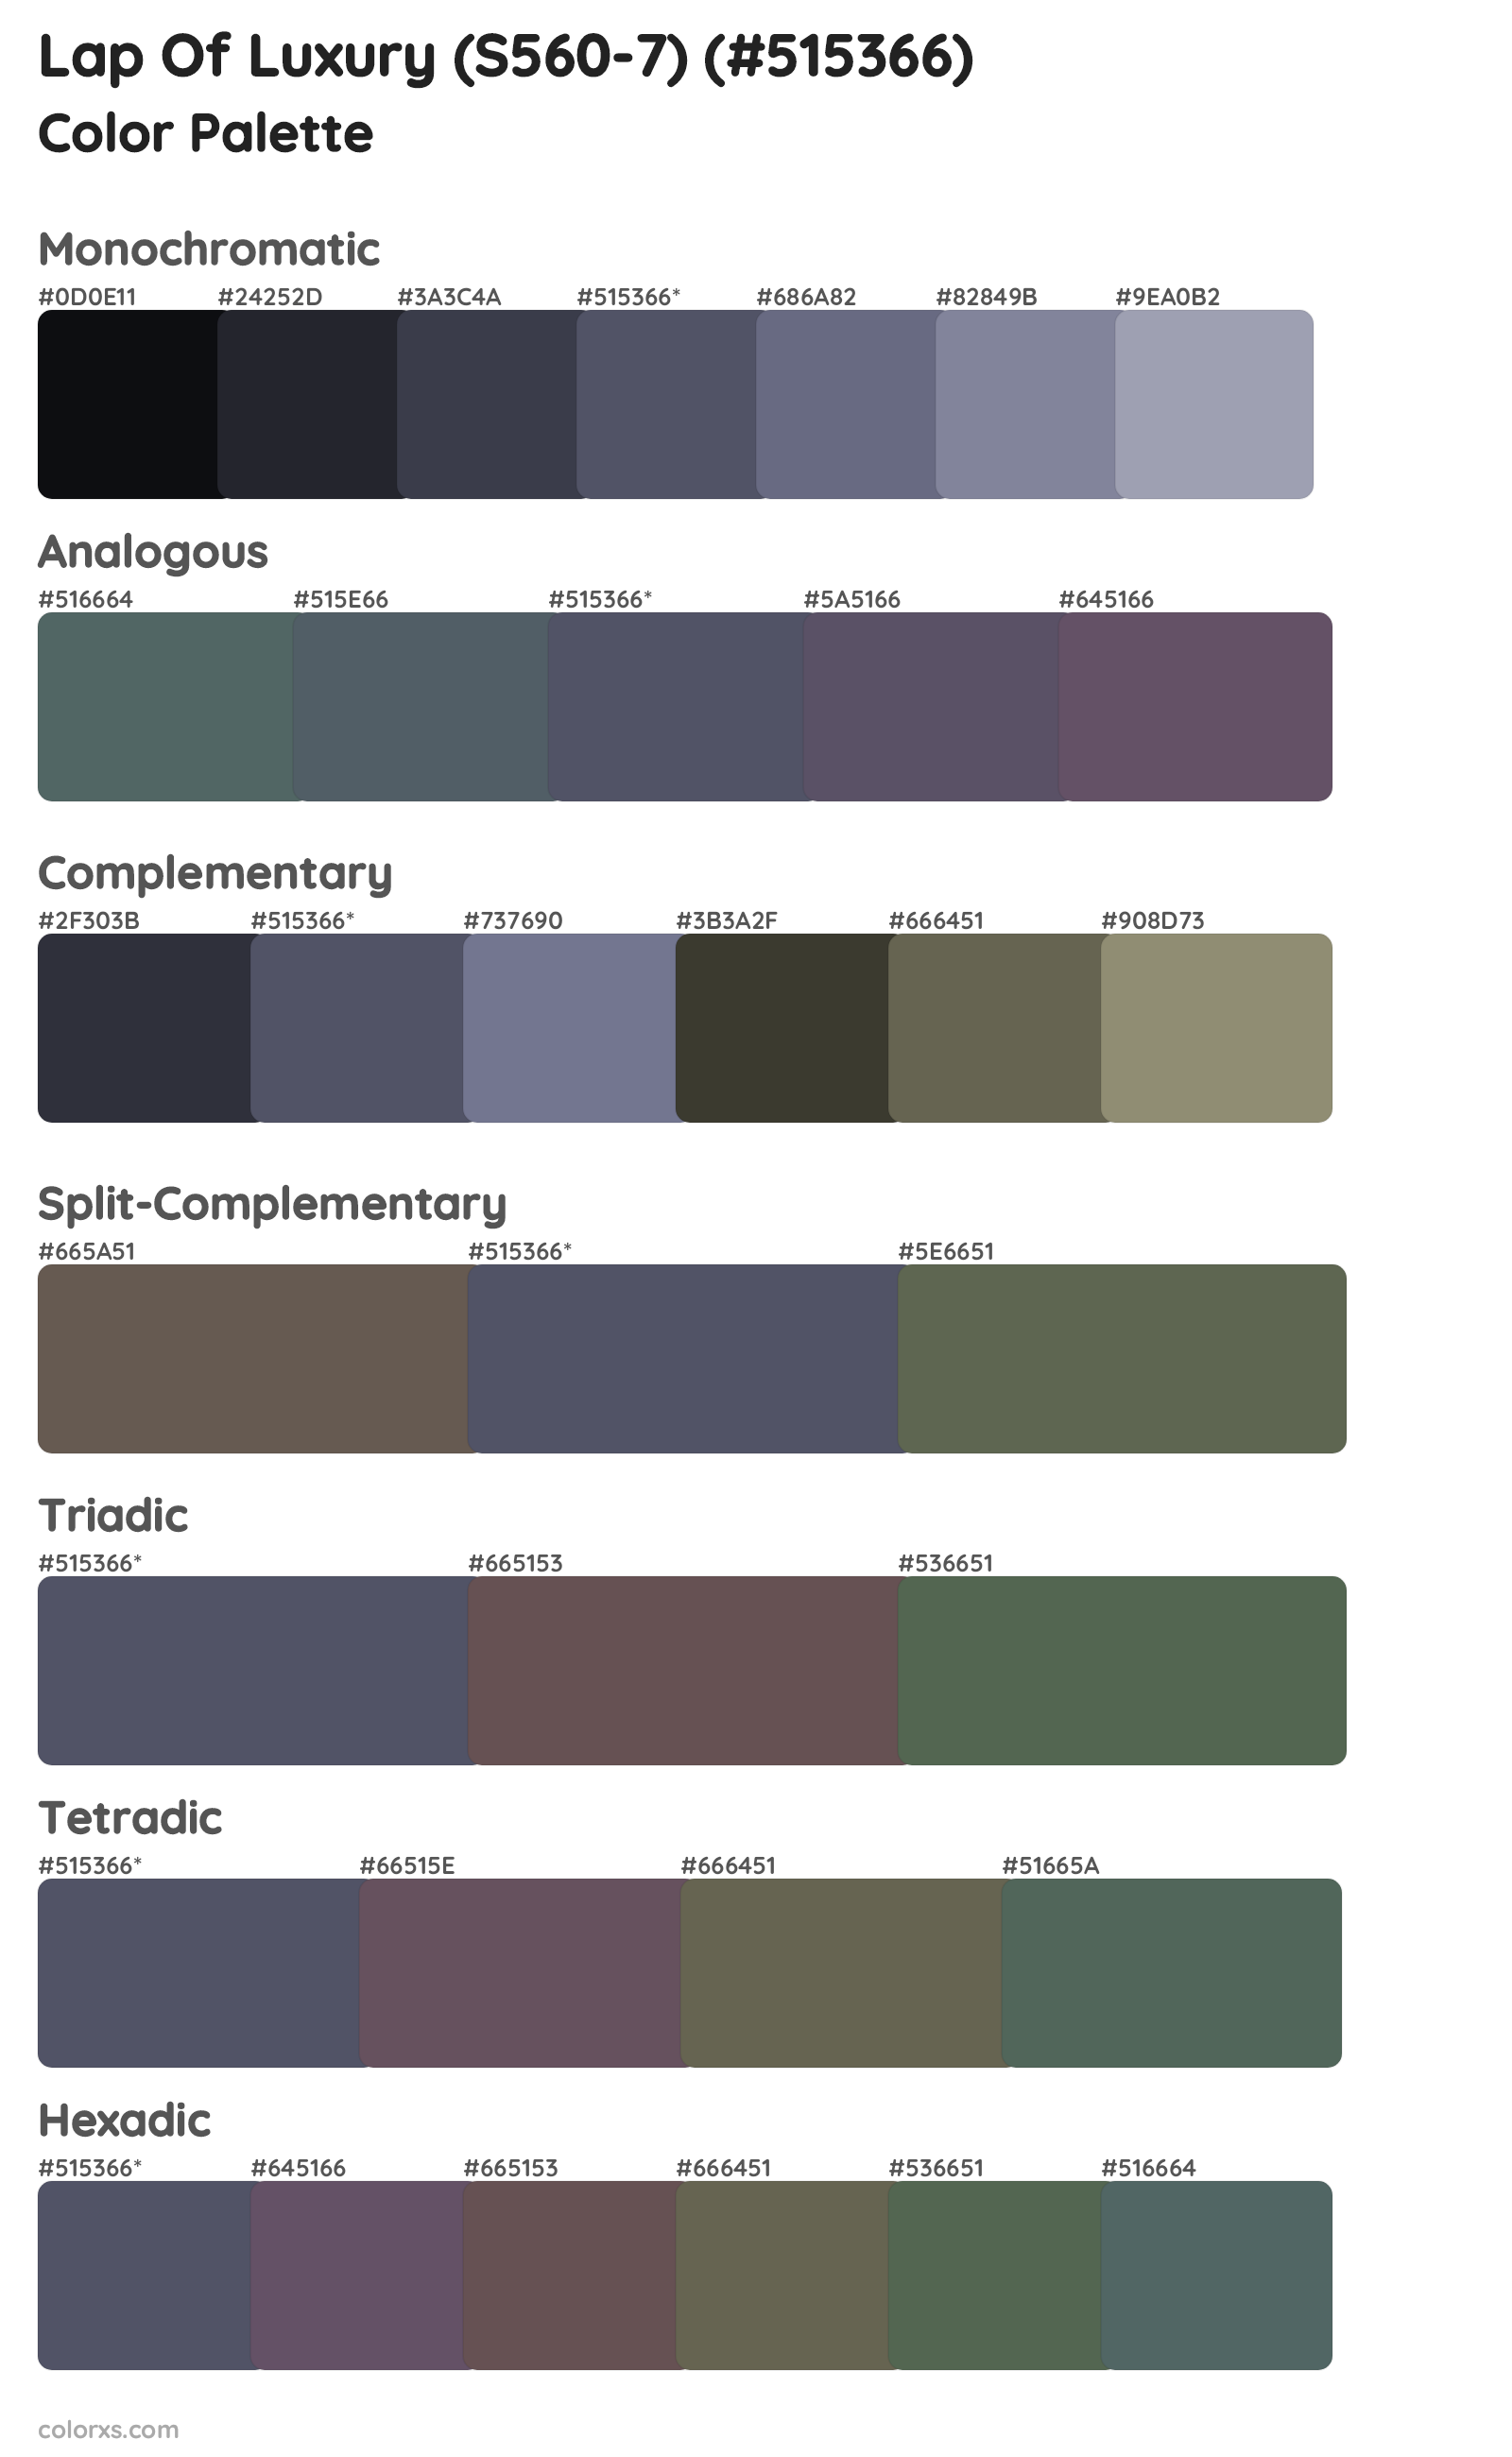 Lap Of Luxury (S560-7) Color Scheme Palettes